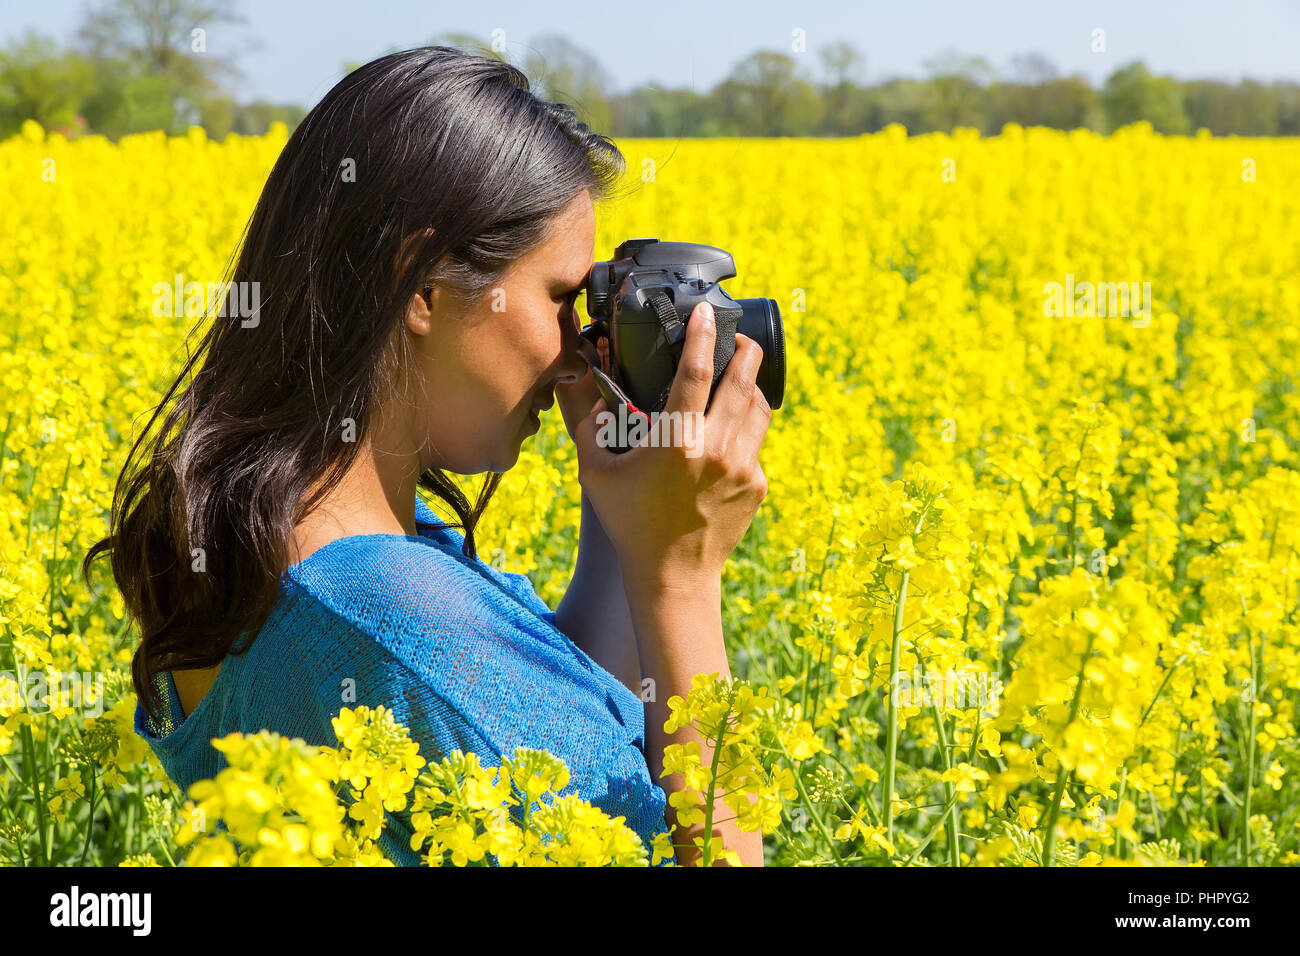 Donna Fotografa campo giallo dei fiori Foto Stock